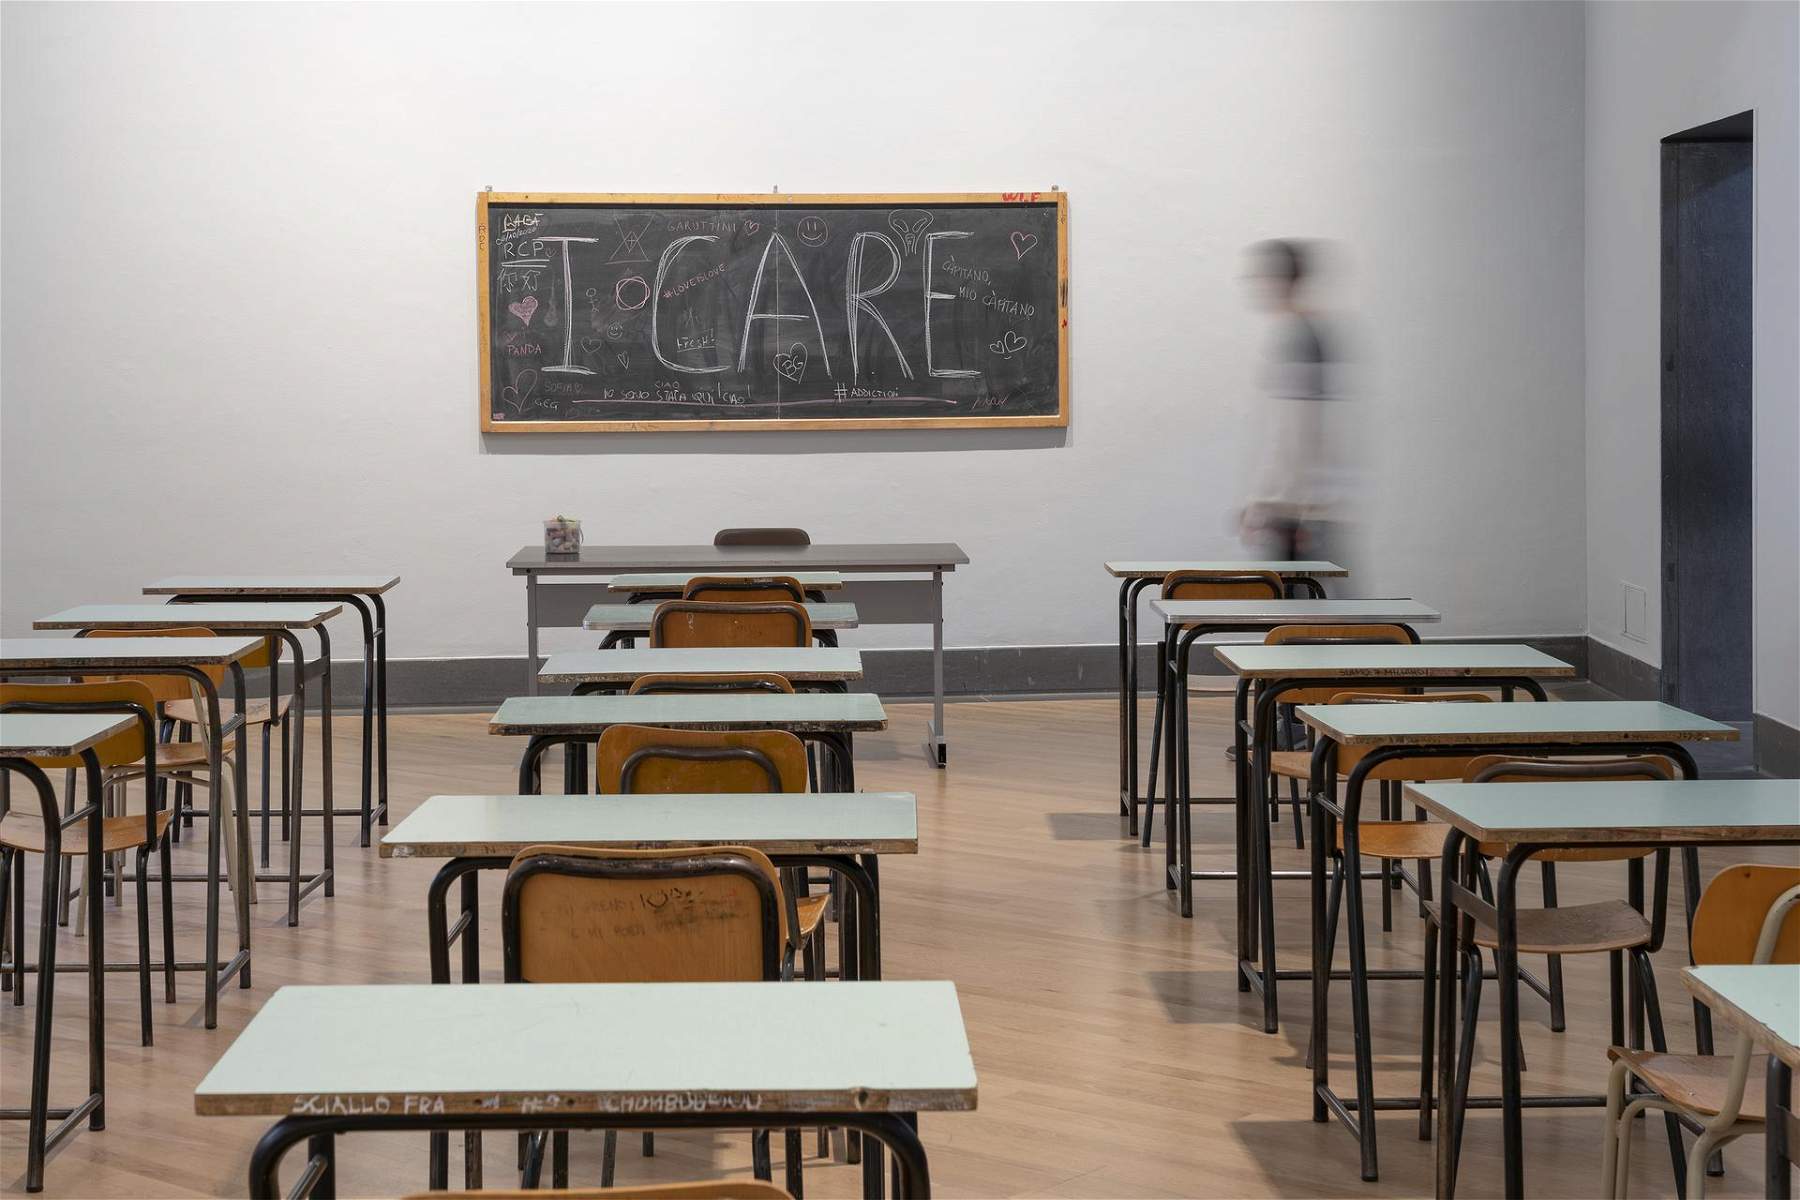 Une idée géniale du GAMeC de Bergame : un cours en ligne sur l'éducation civique et l'art